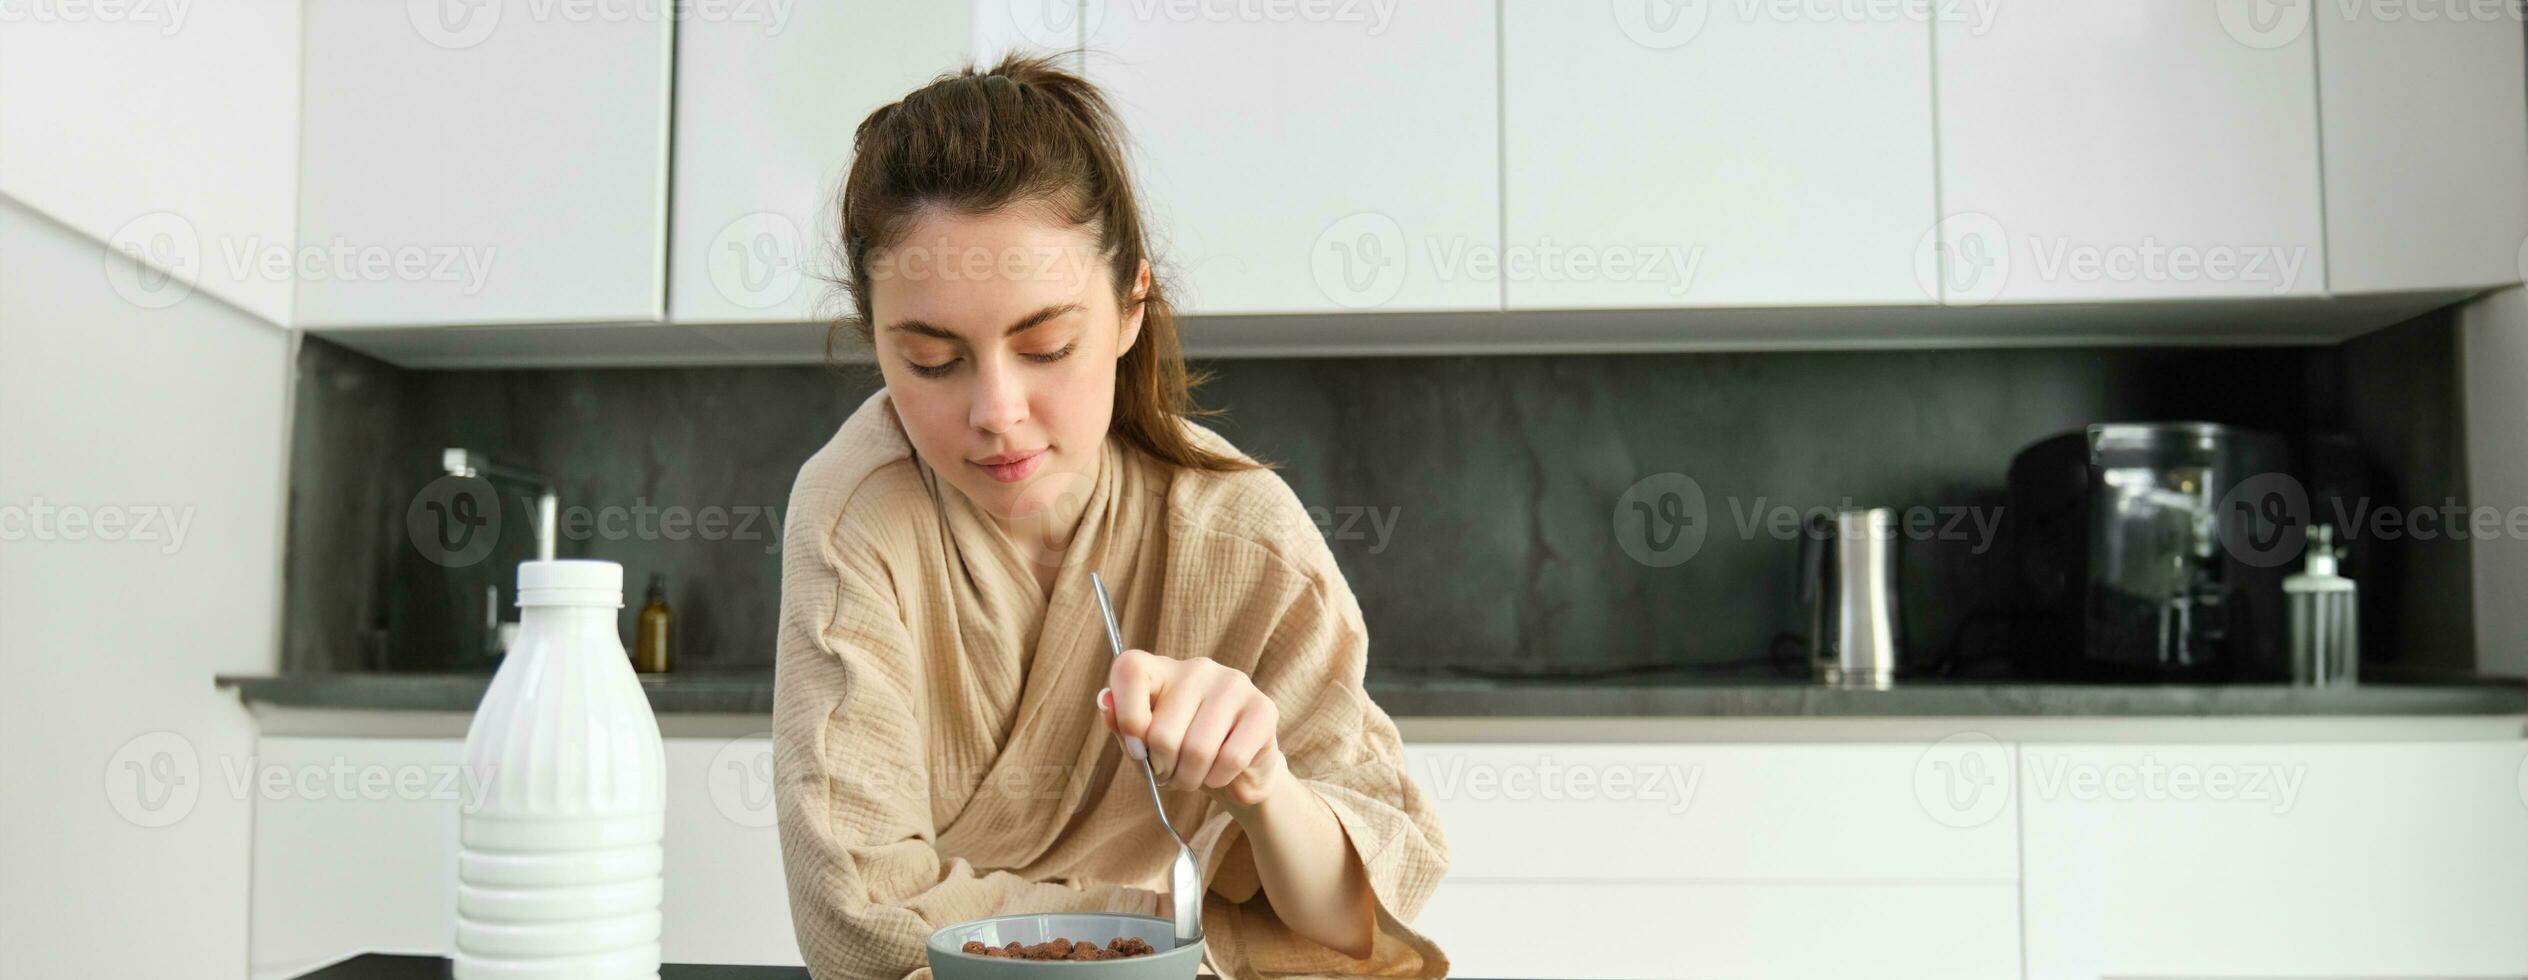 Immagine di contento giovane donna mangiare cereali a casa con latte, avendo sua colazione, indossare accappatoio, seduta nel cucina solo foto